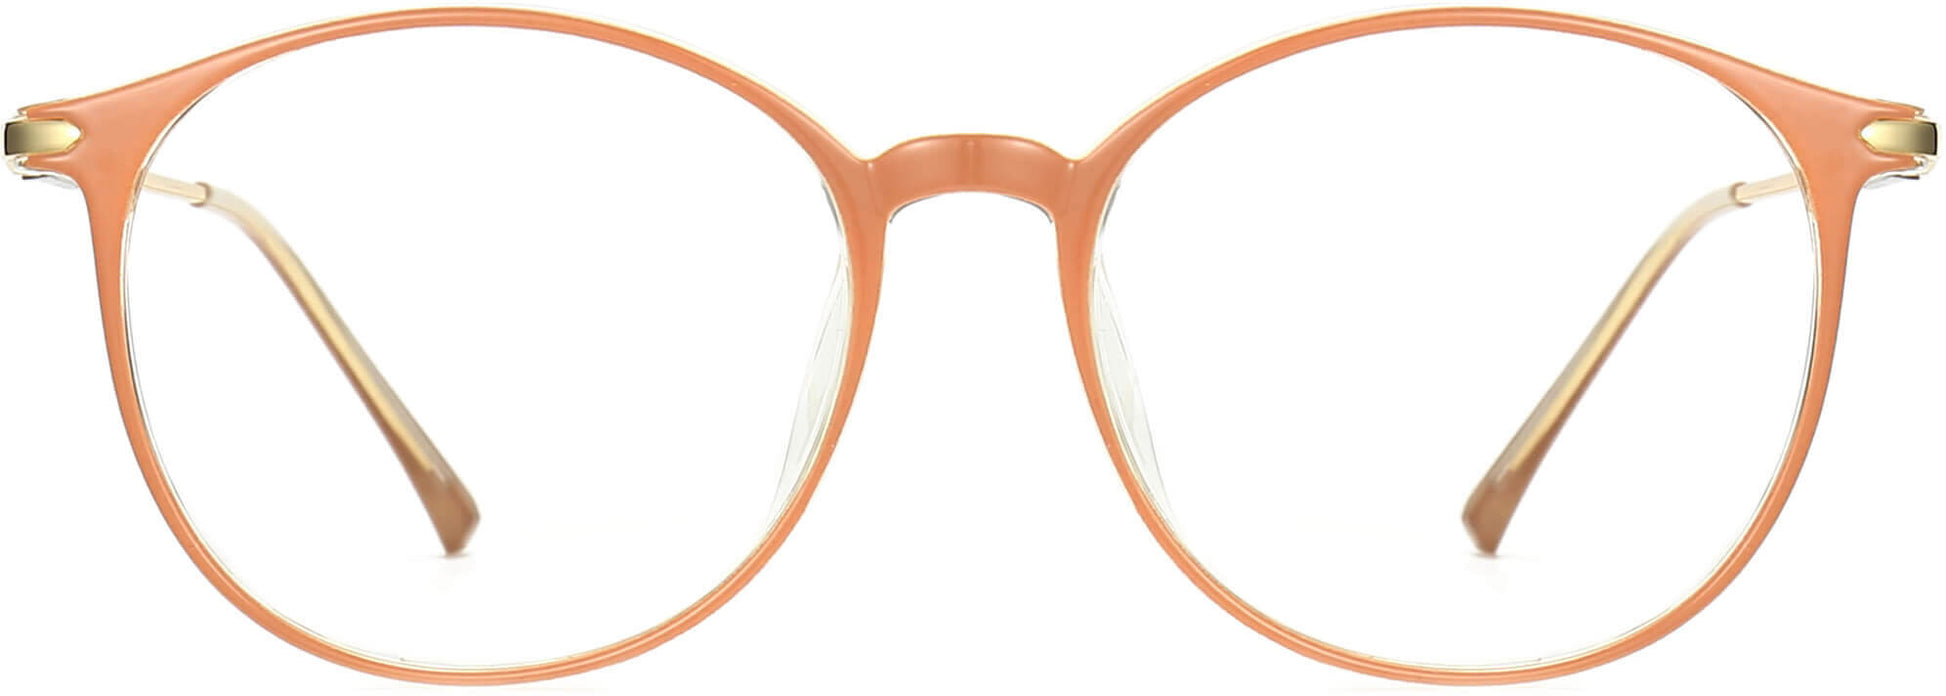 Aurelia Round Khaki Eyeglasses from ANRRI, front view